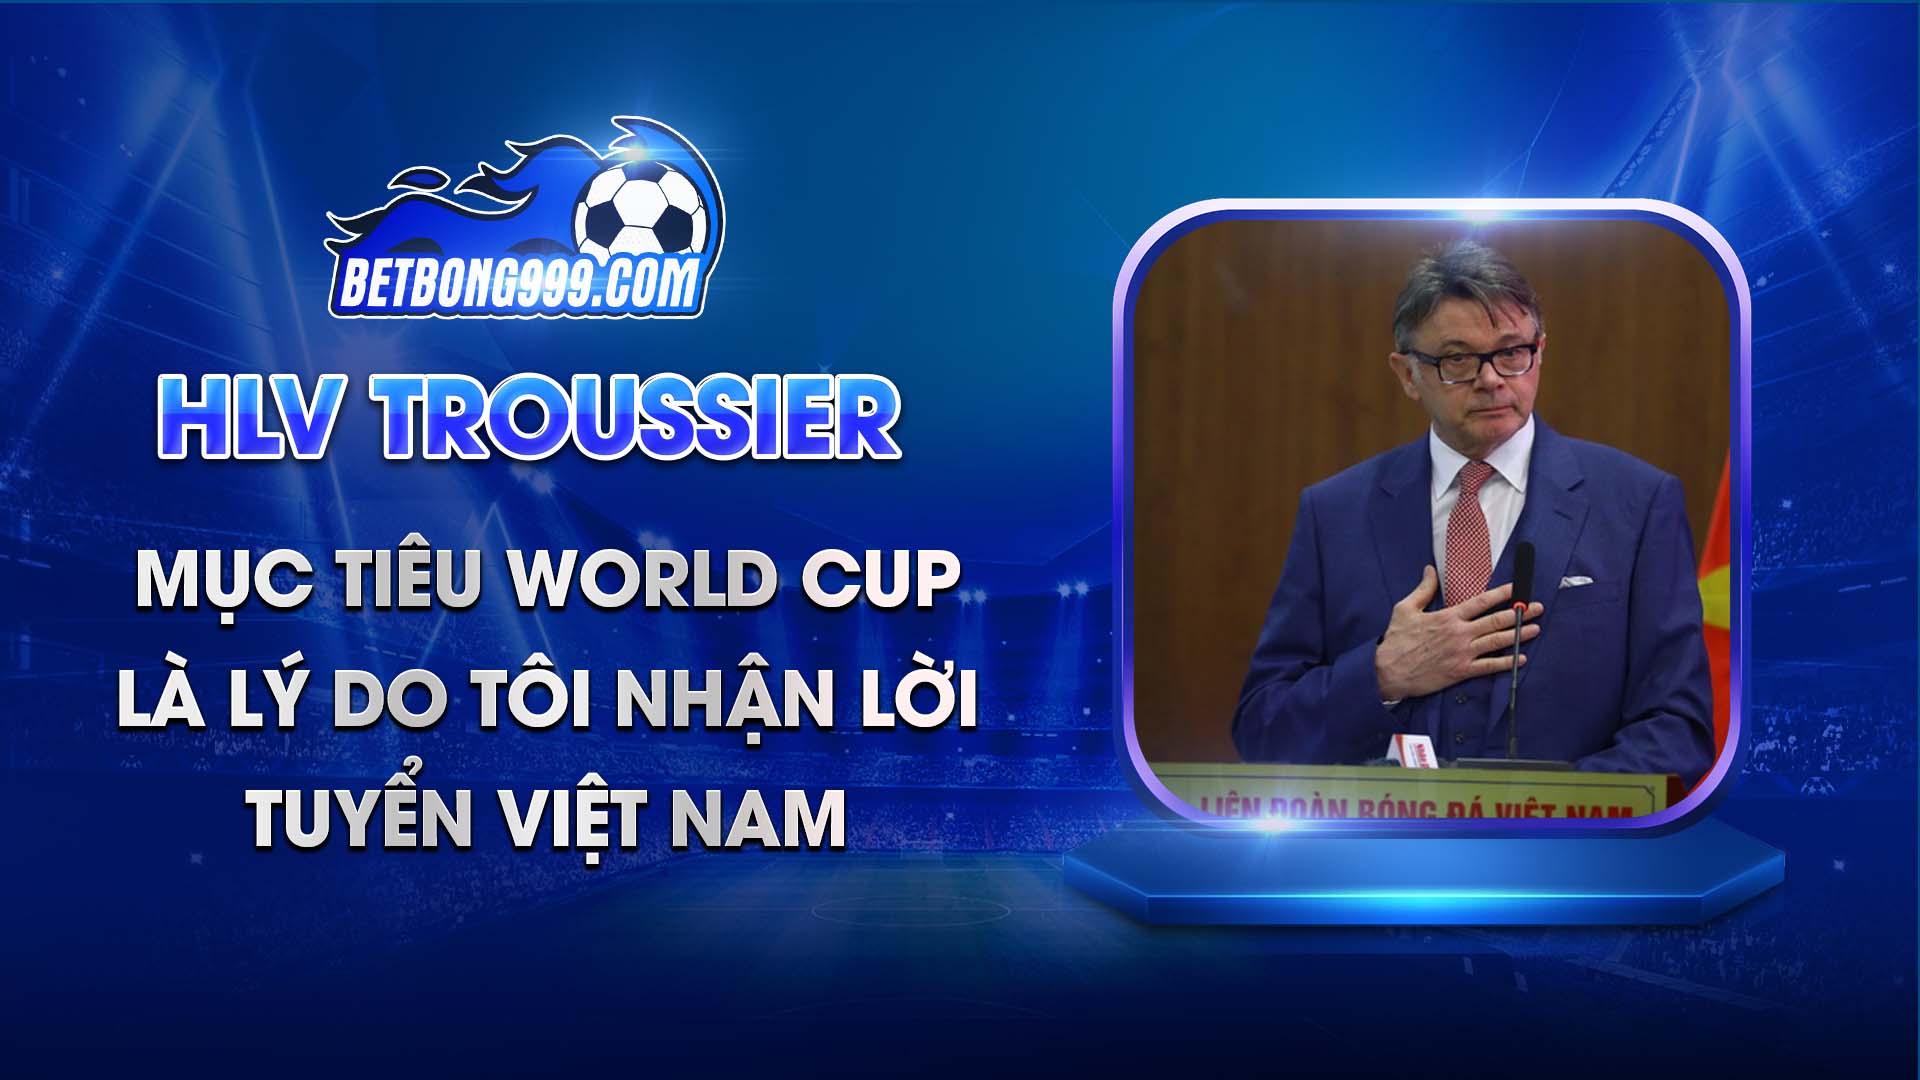 HLV Troussier Mục tiêu World Cup là lý do tôi nhận lời tuyển Việt Nam